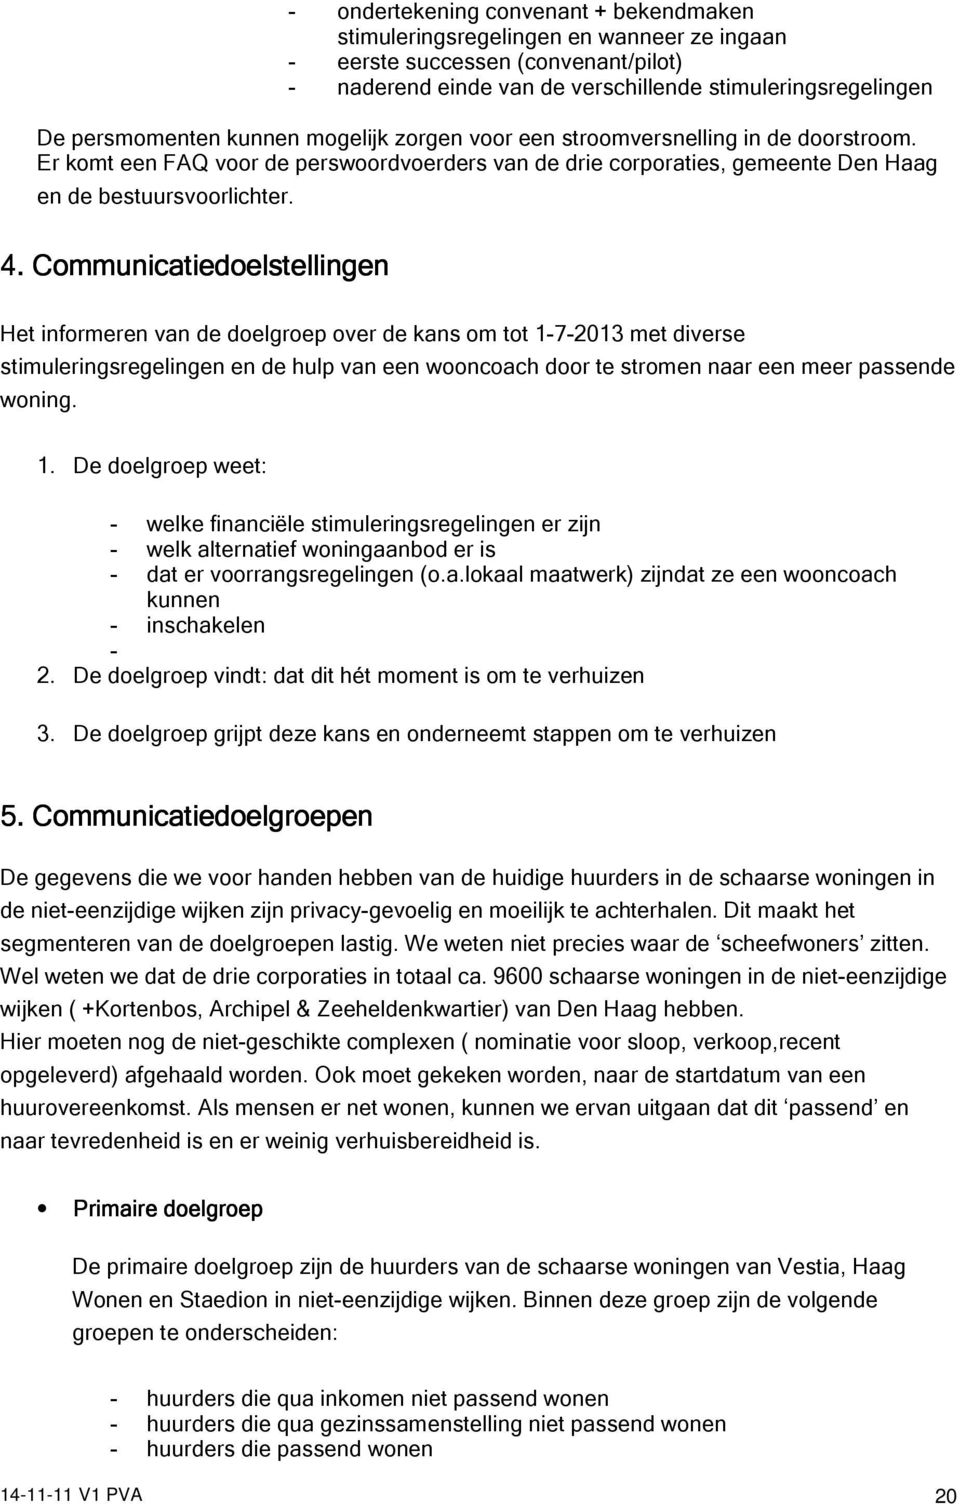 Communicatiedoelstellingen Het informeren van de doelgroep over de kans om tot 1-7-2013 met diverse stimuleringsregelingen en de hulp van een wooncoach door te stromen naar een meer passende woning.